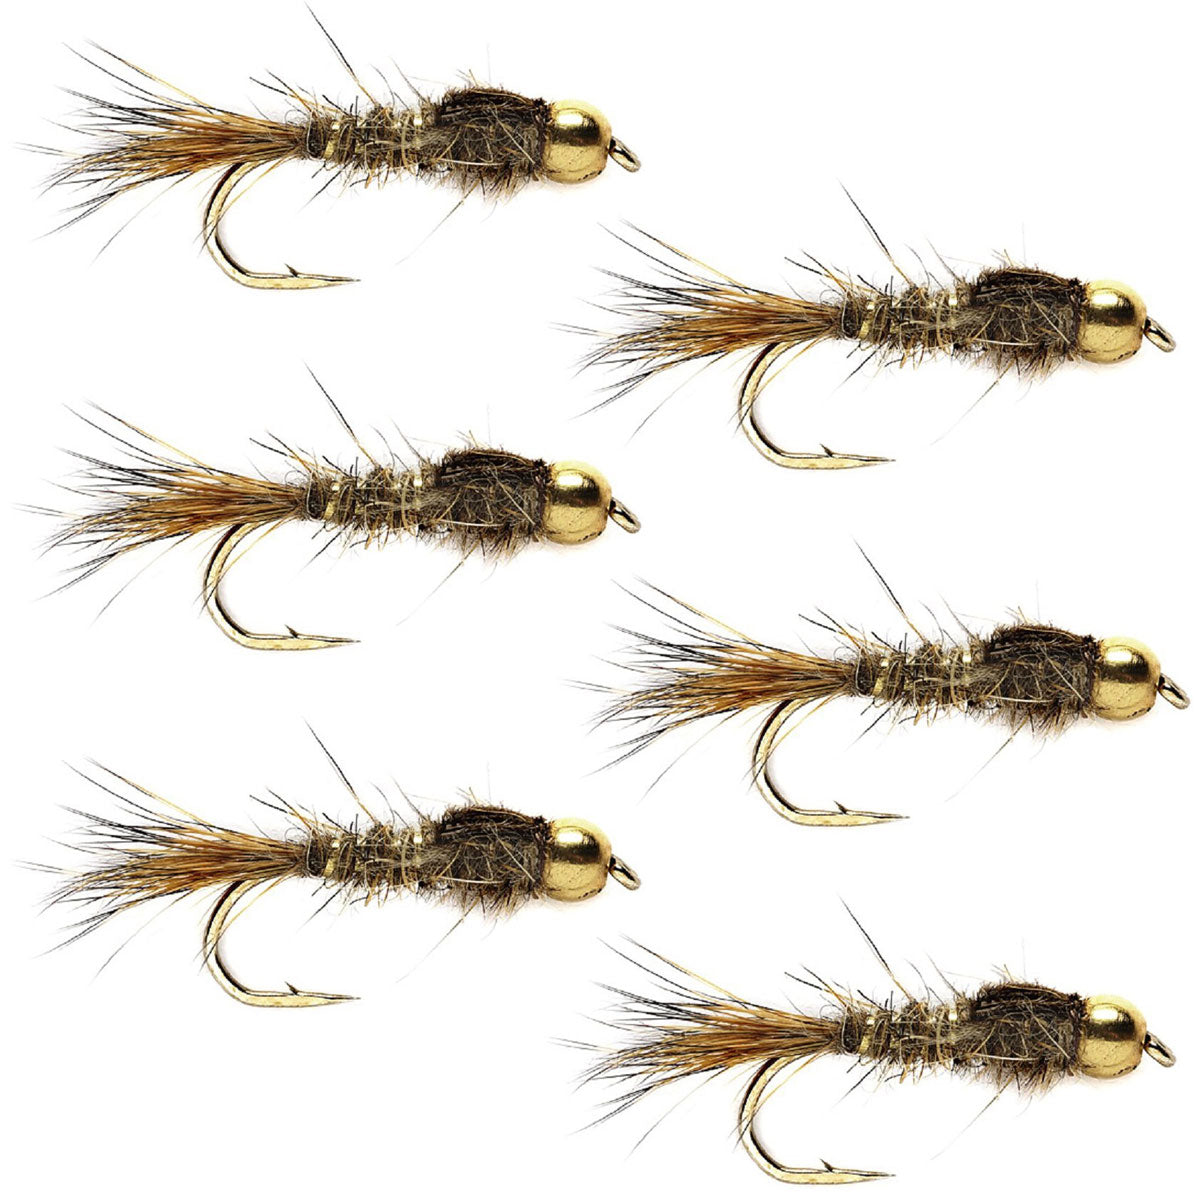 Moscas de pesca con mosca de ninfa con cabeza de cuentas, mosca de trucha de oreja de liebre acanalada dorada, mosca húmeda de ninfa, 6 moscas, tamaño de anzuelo 16 